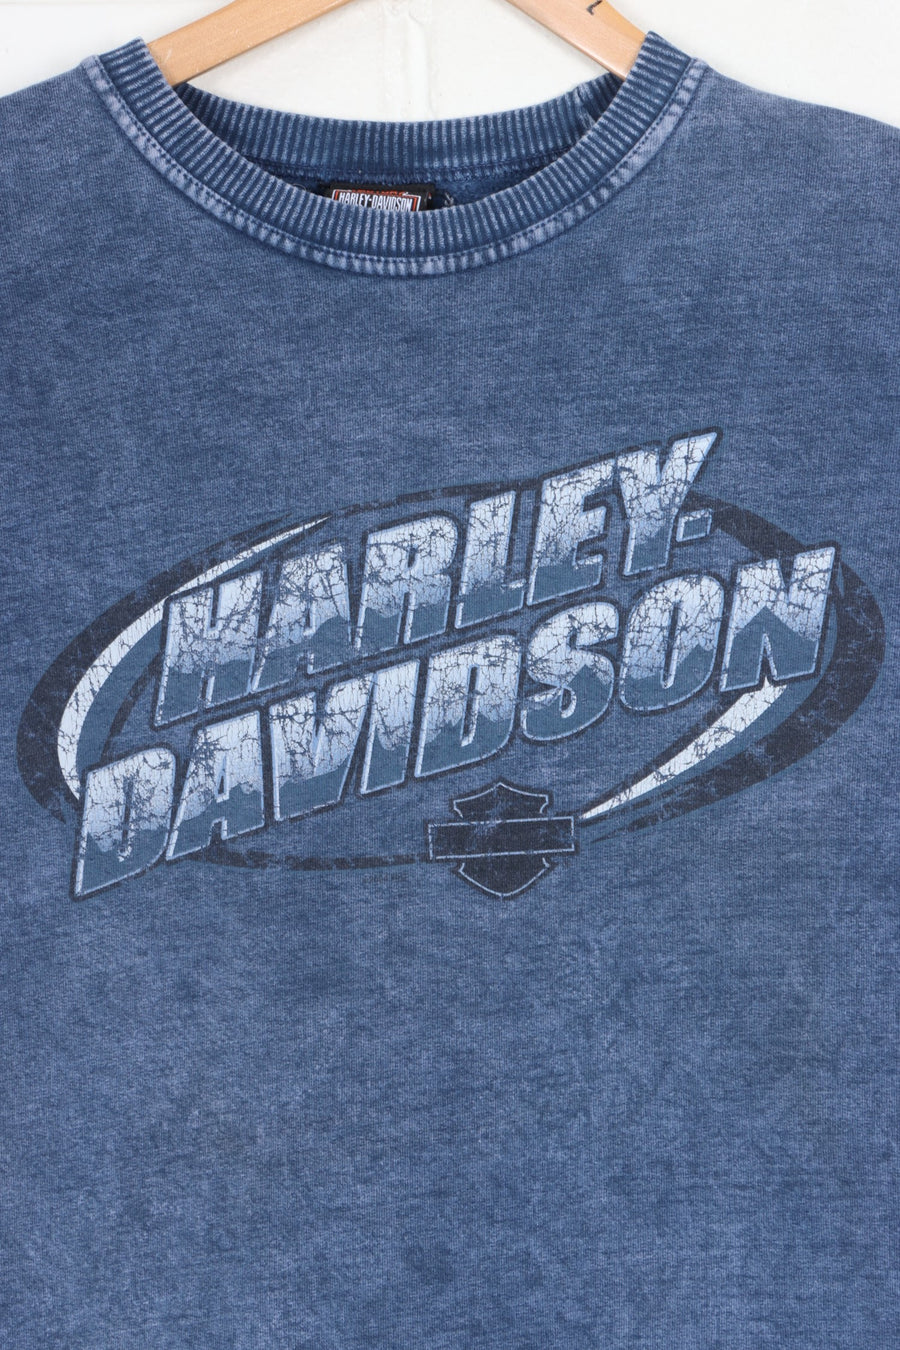 HARLEY DAVIDSON Ohio Front Back Blue Acid Wash Sweatshirt (M)